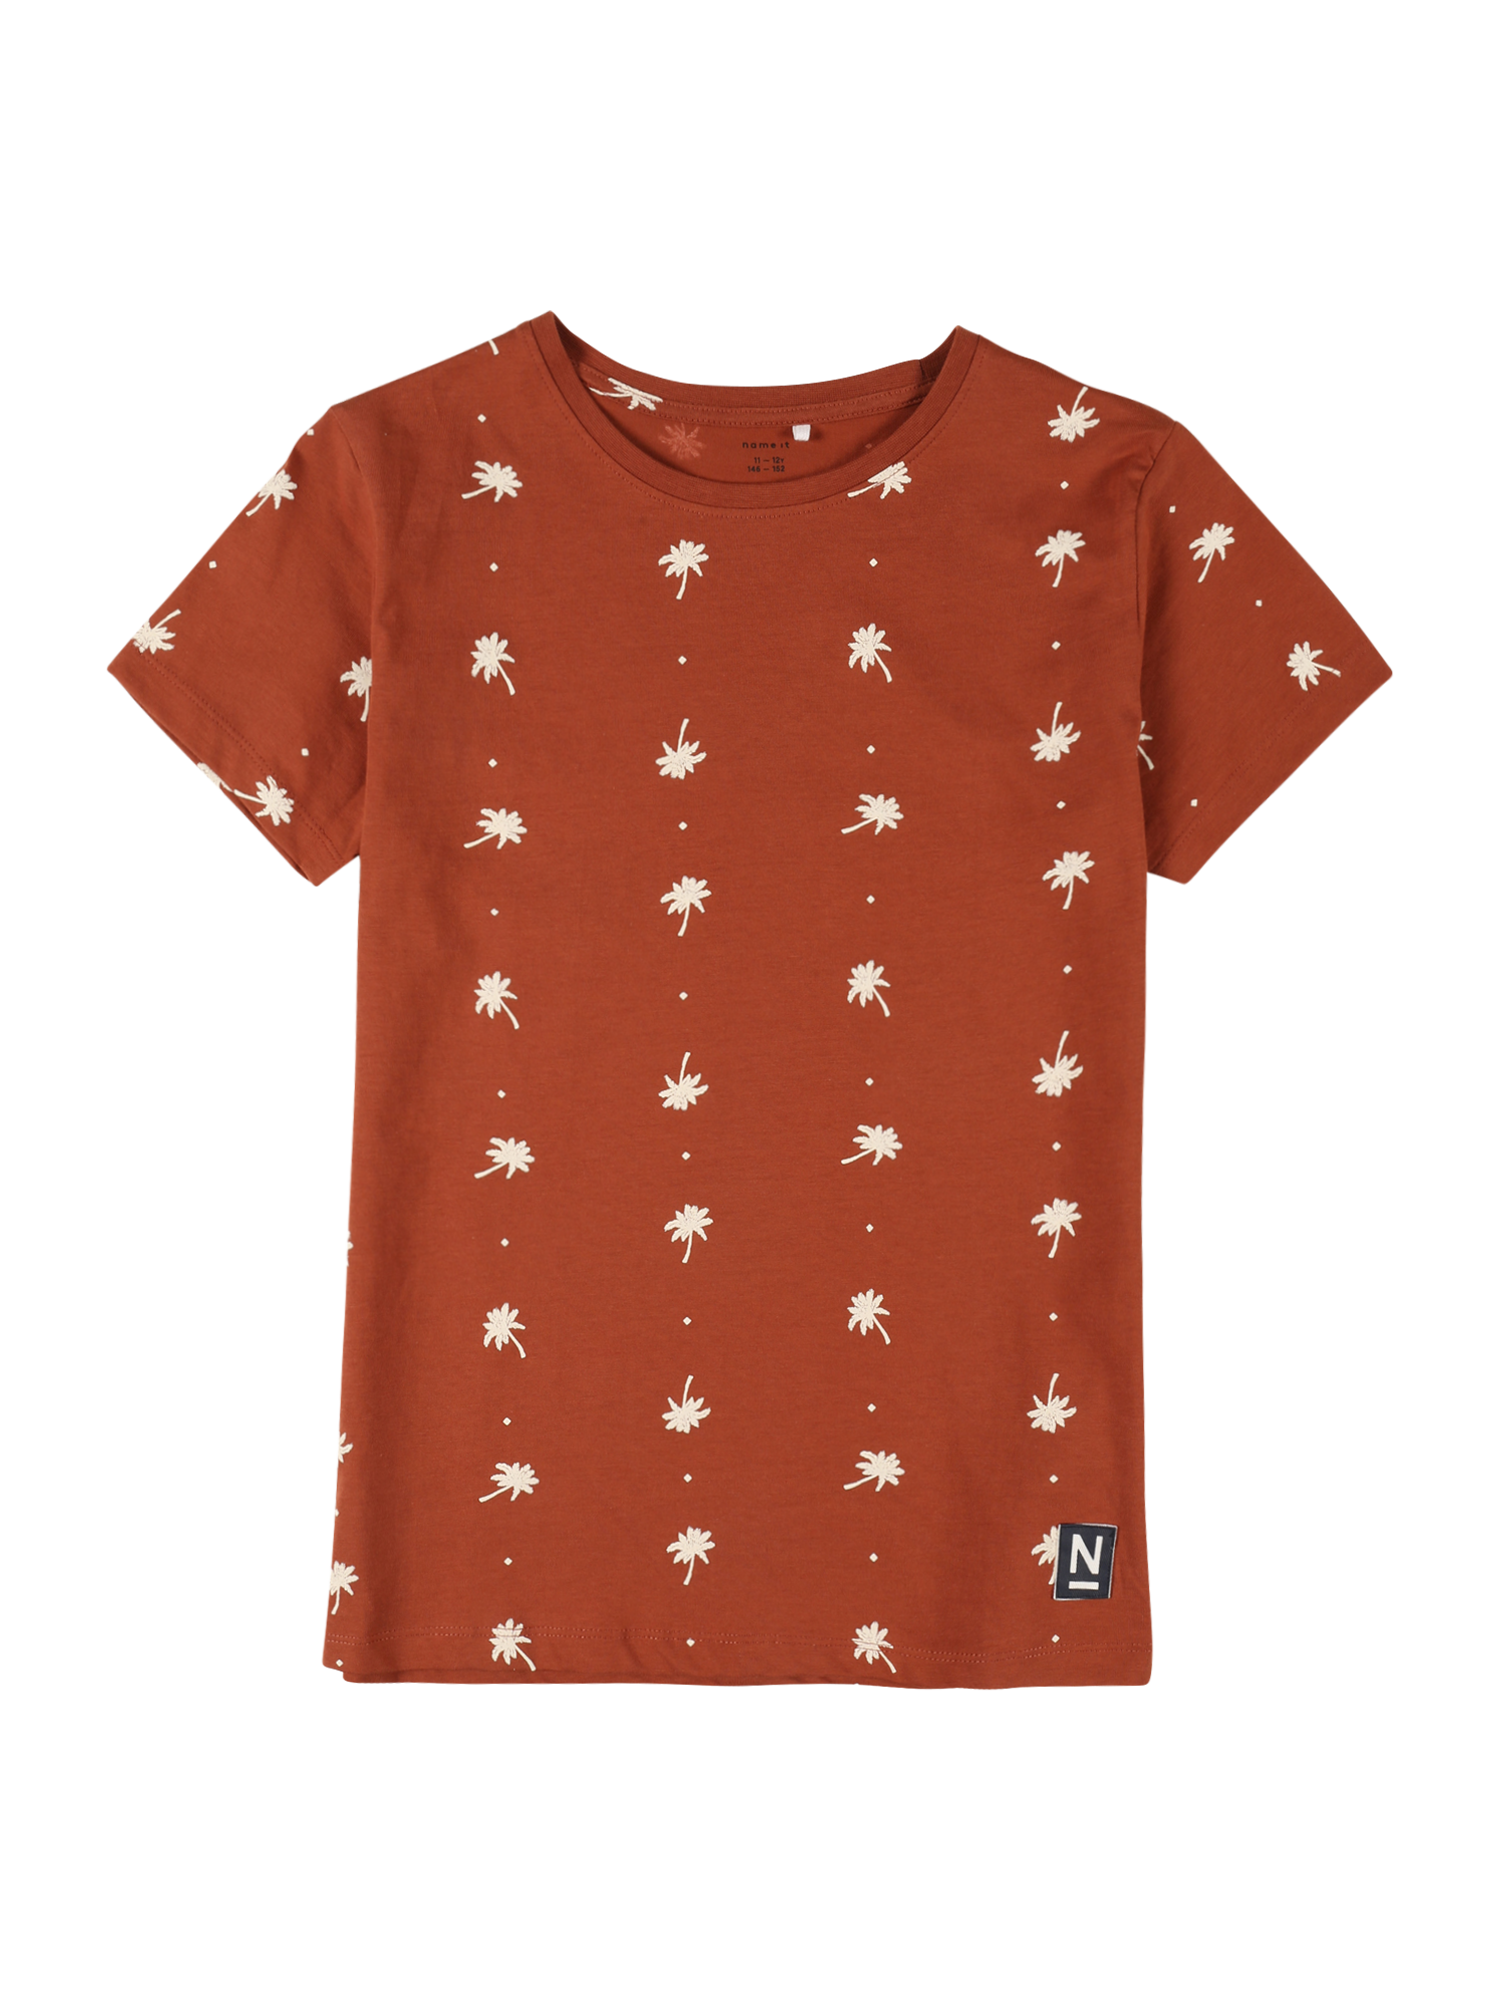 66I81 Dzieci NAME IT Koszulka TOLME w kolorze Rdzawobrązowym 